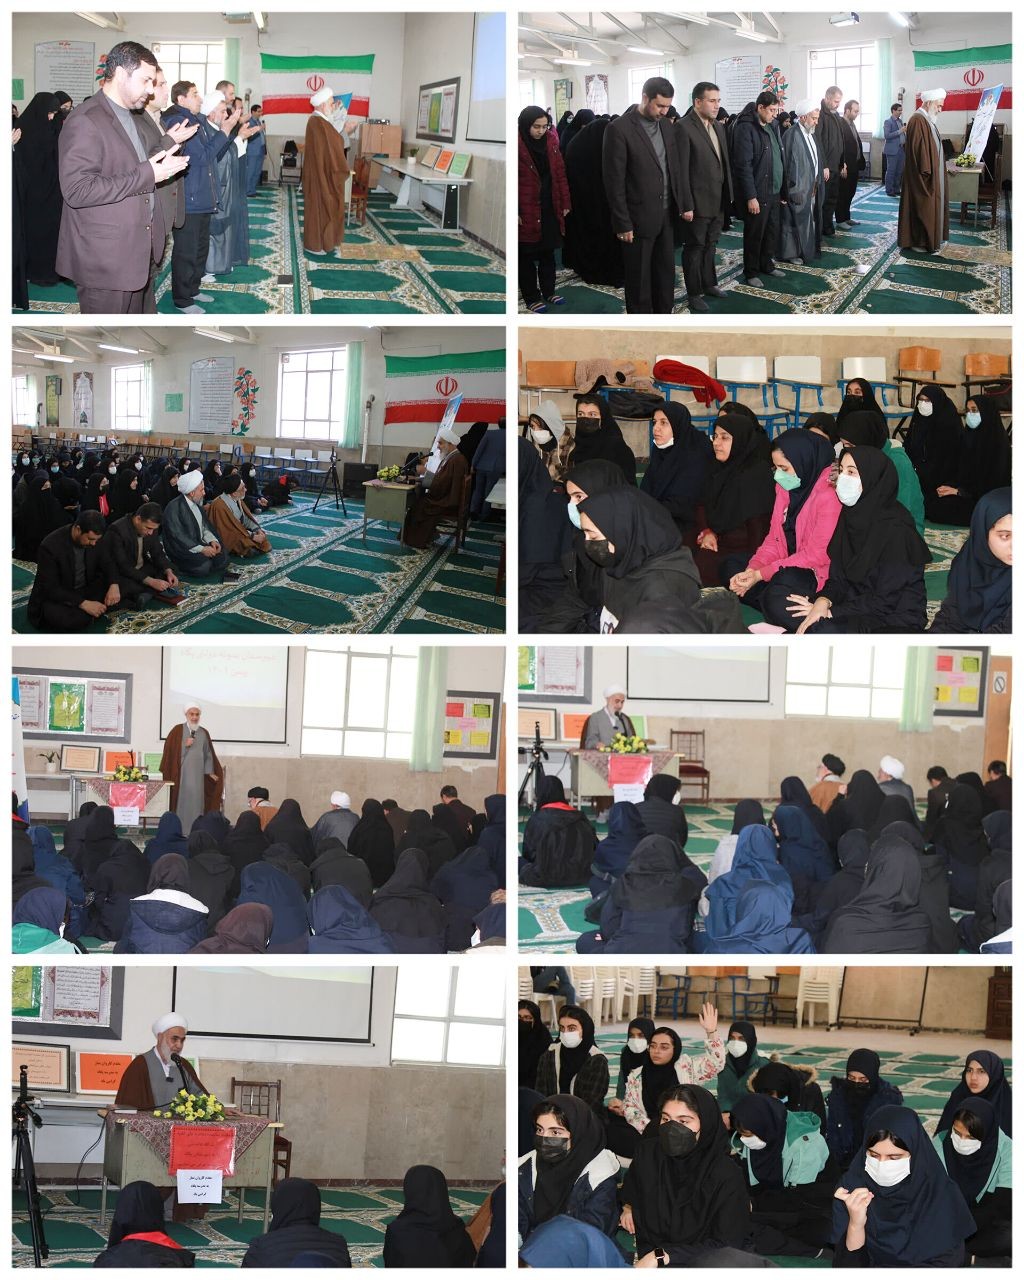 برگزاری مراسم کاروان نماز در مدرسه نمونه دولتی دخترانه پگاه ناحیه یک